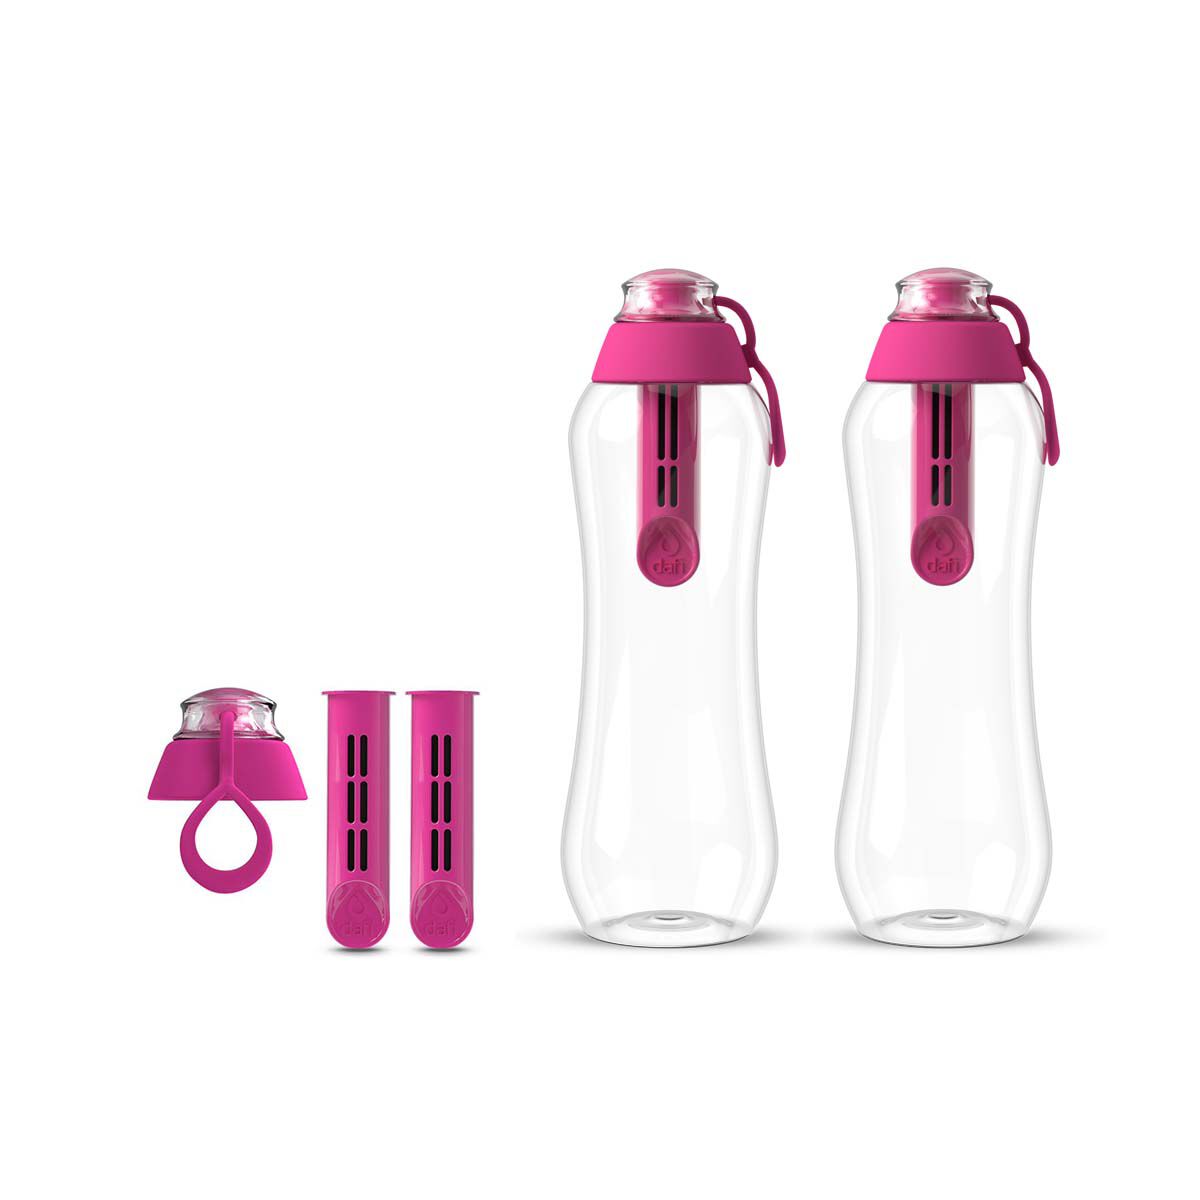 Набор из бутылок с угольным фильтром Dafi Soft, 5 предметов, розовый фото